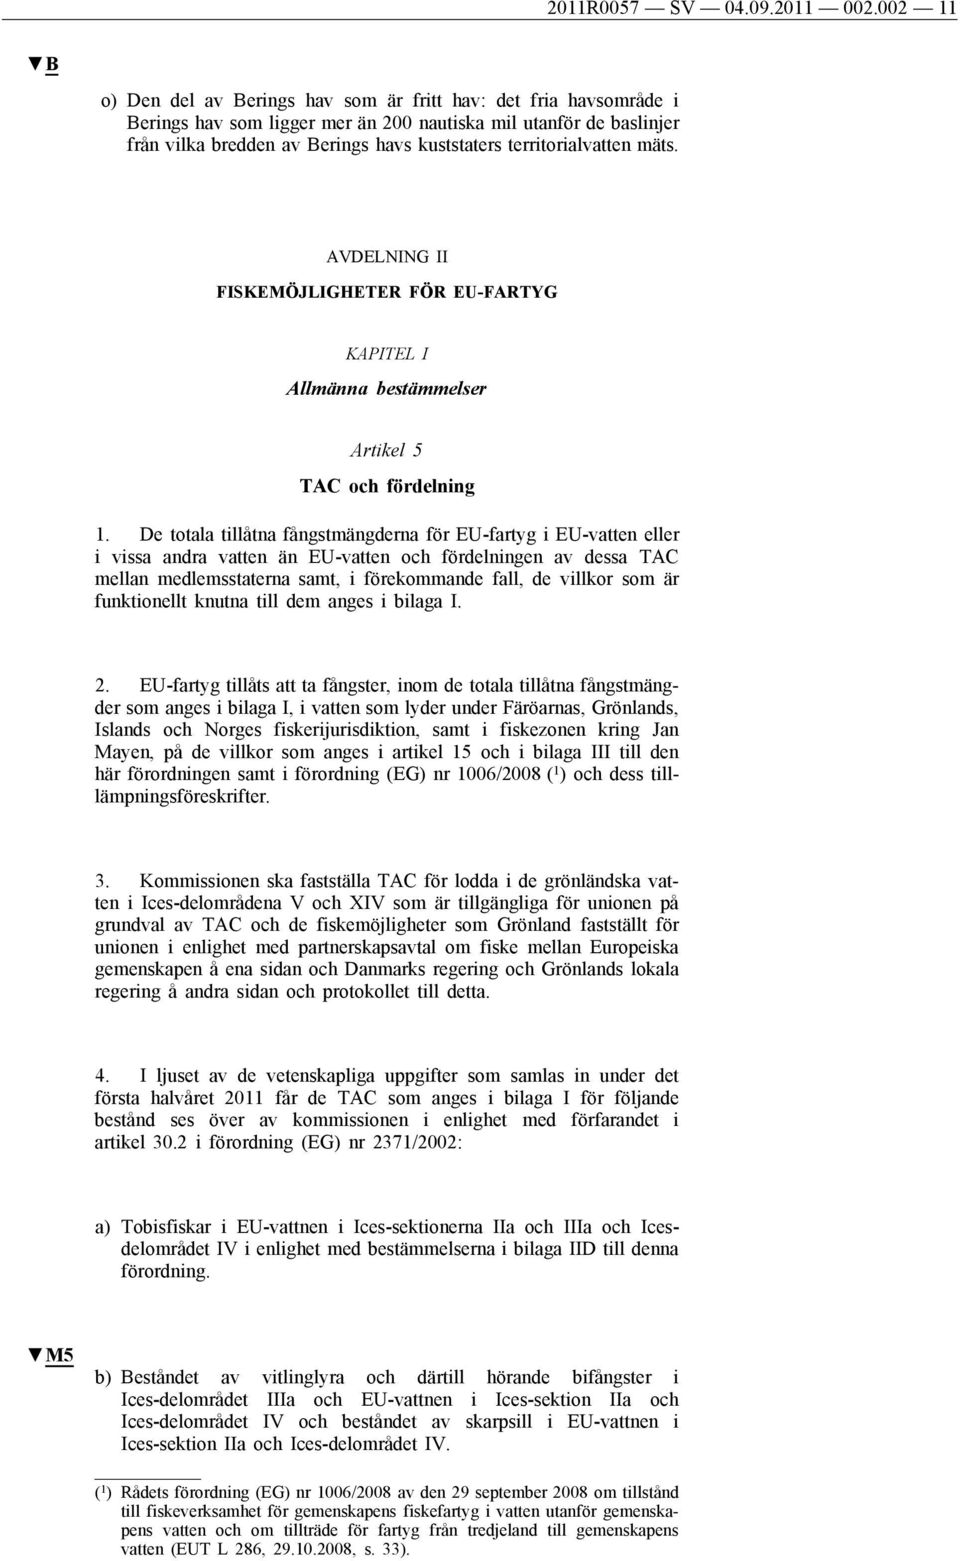 territorialvatten mäts. AVDELNING II FISKEMÖJLIGHETER FÖR EU-FARTYG KAPITEL I Allmänna bestämmelser Artikel 5 TAC och fördelning 1.